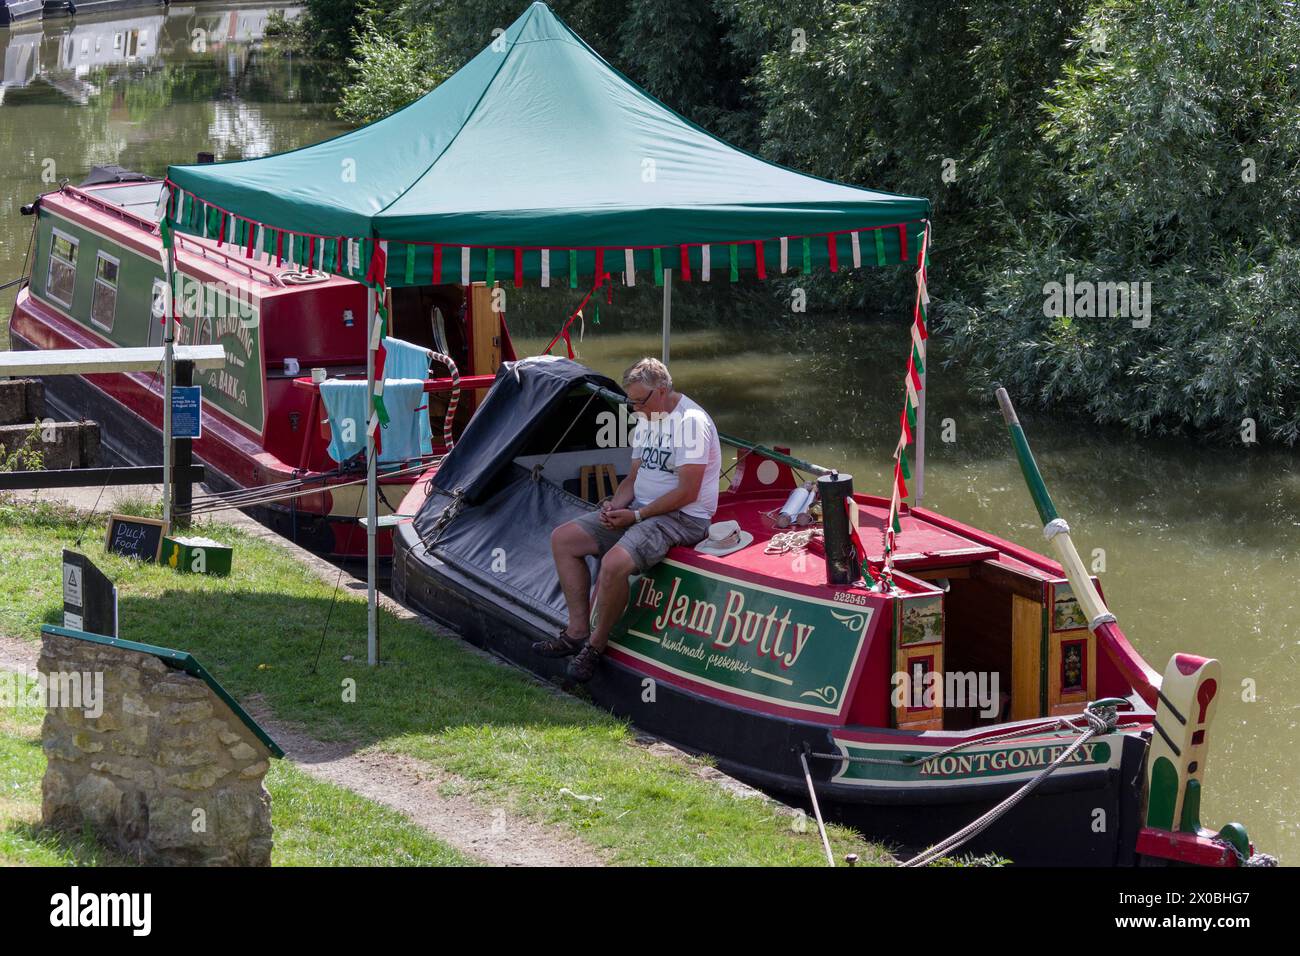 The Jam Butty, una barca a vela che vende conserve fatte in casa, sul canale Grand Union al festival Blisworth Canal, Northamptonshire, Regno Unito Foto Stock